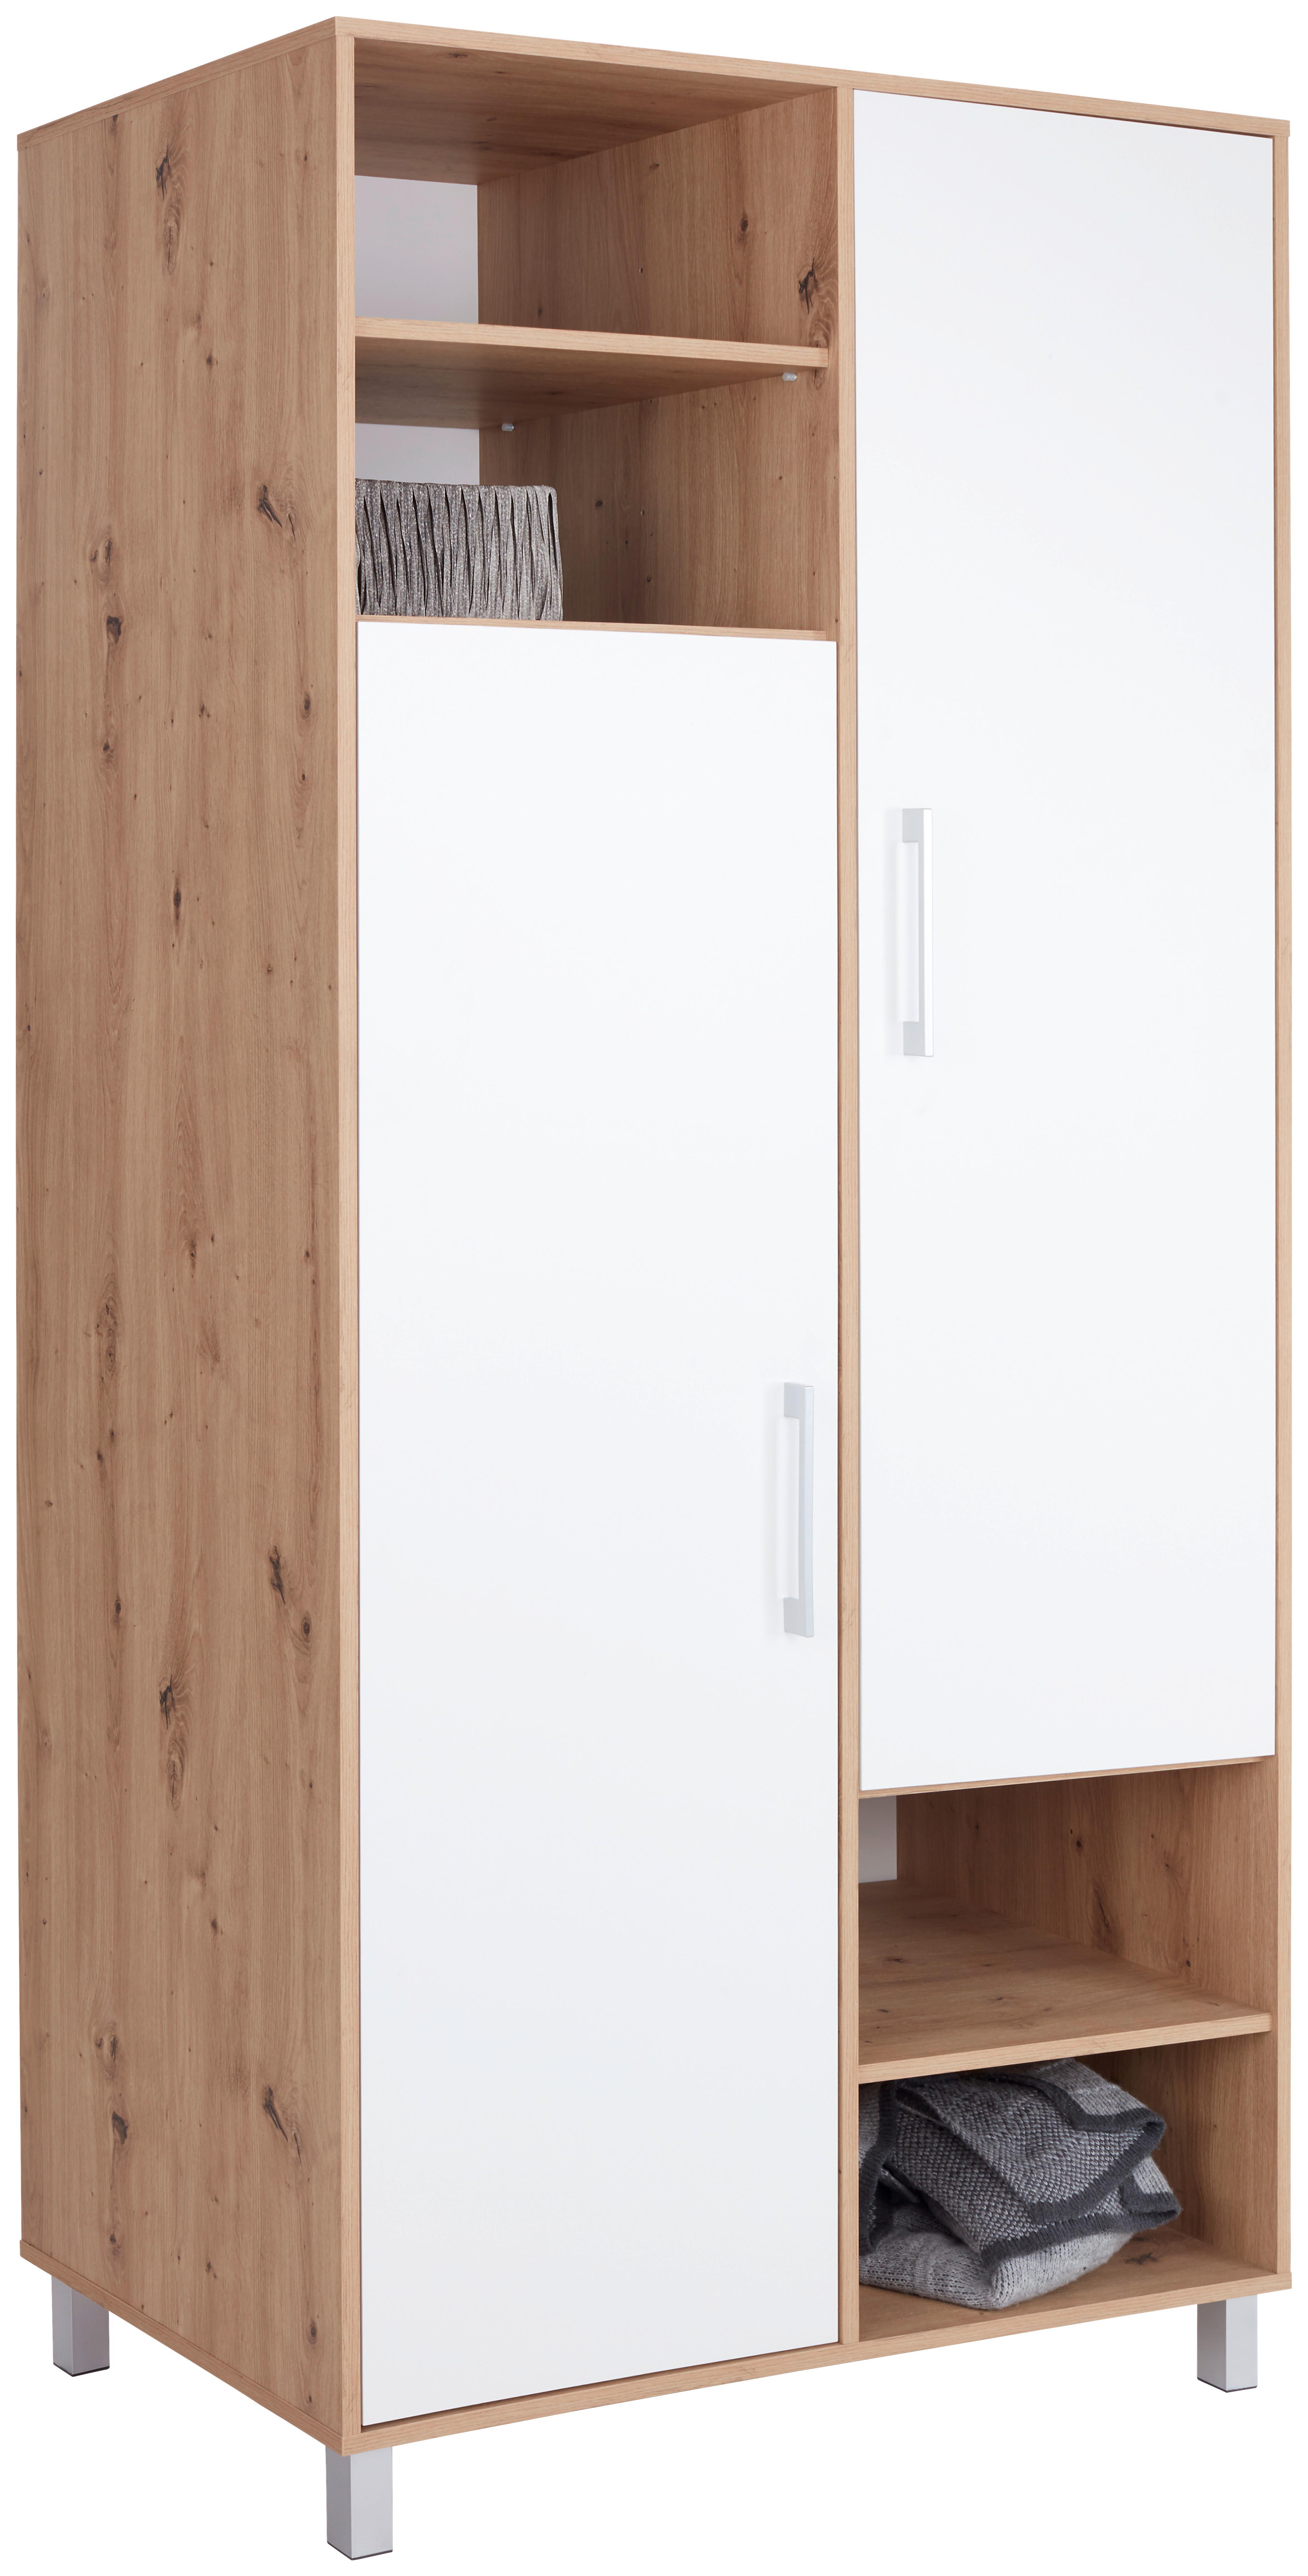 Kleiderschrank mit Fächern 98cm Box, Weiß/Eiche Dekor - Eichefarben/Weiß, MODERN, Holzwerkstoff (98/205/55cm) - Ondega